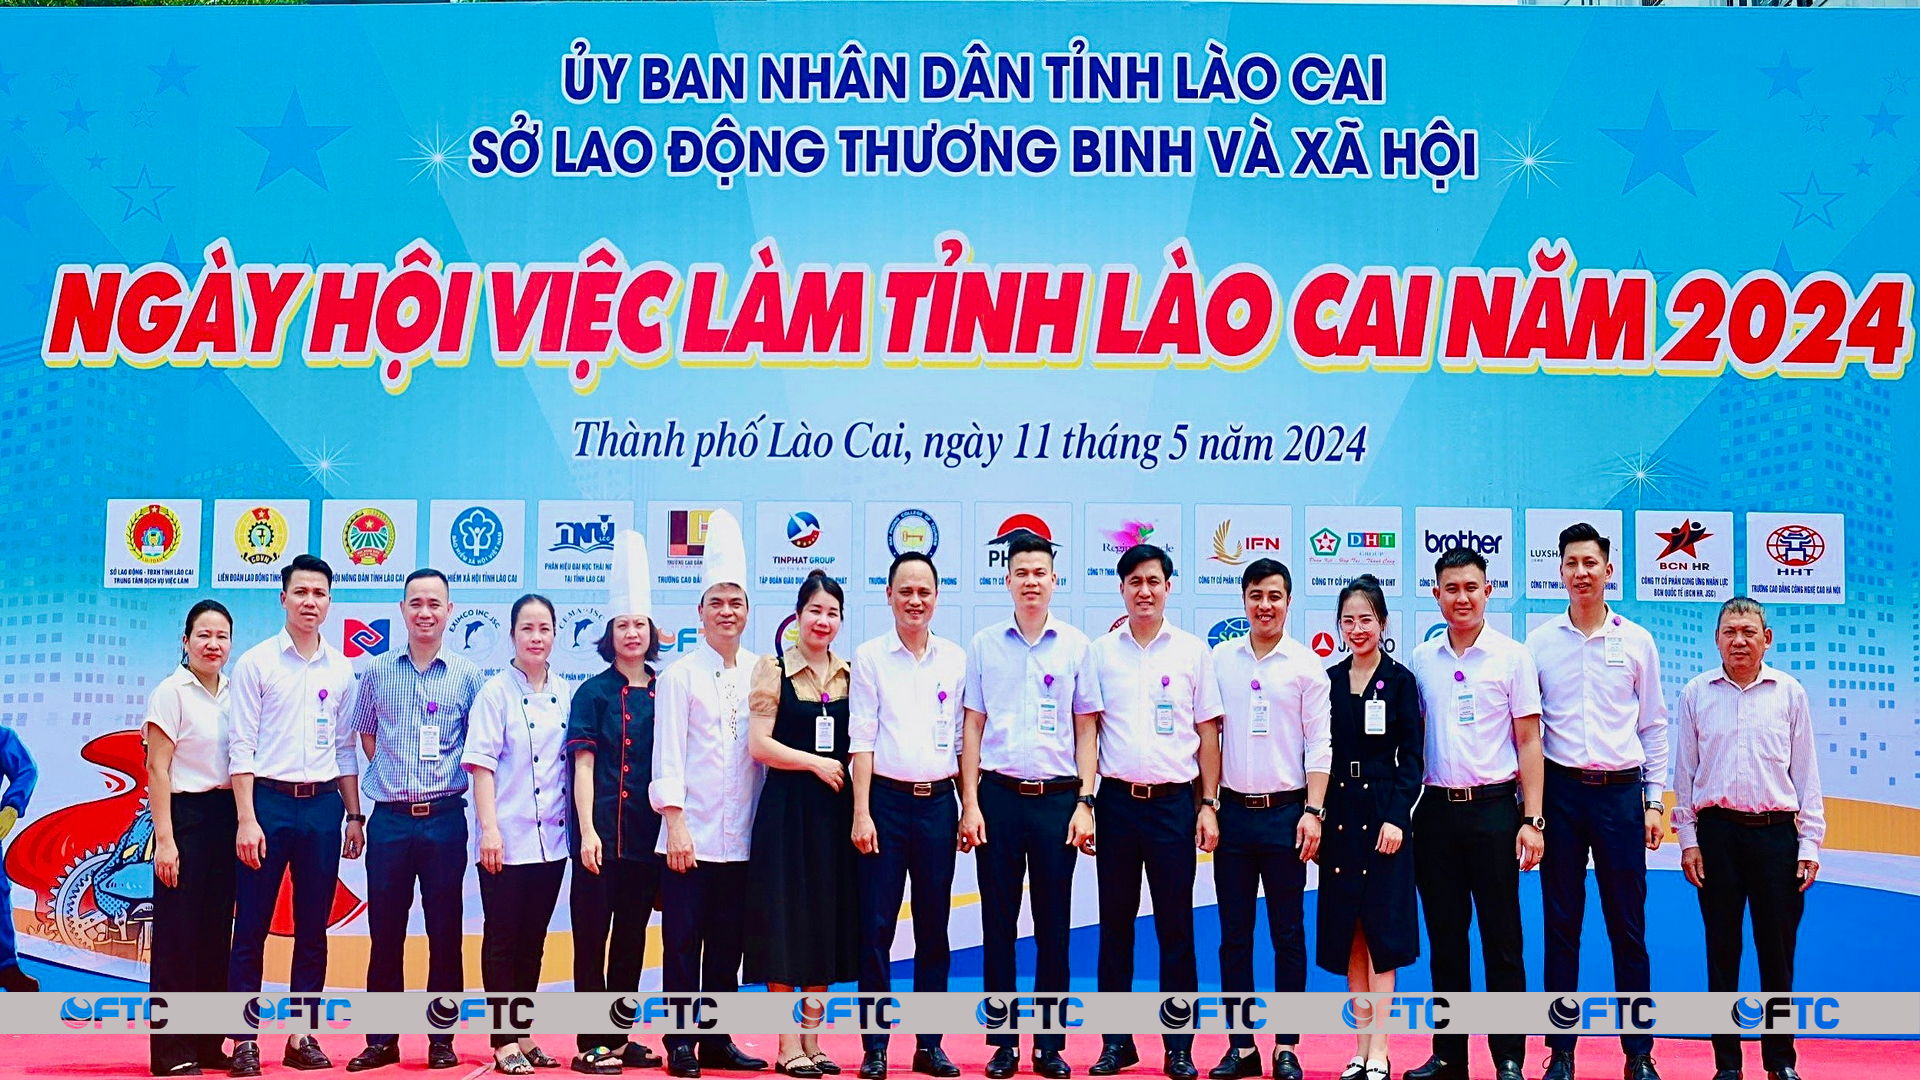 FTC đồng hành cùng các em học sinh tại Ngày hội tư vấn, hướng nghiệp, giới thiệu việc làm năm 2024 tại Lào Cai